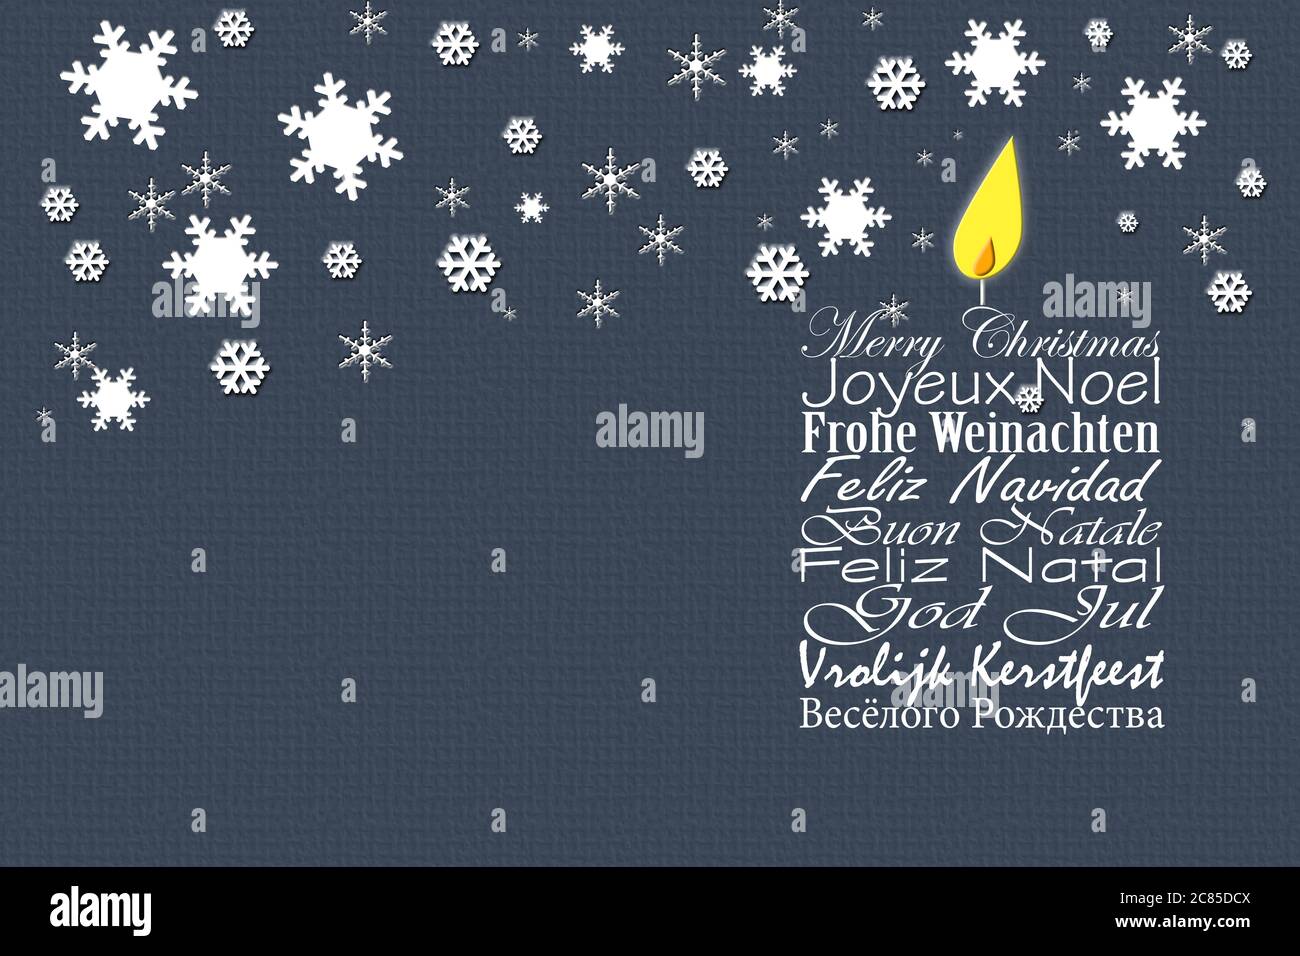 Frohe Weihnachten Visitenkarte. Weihnachtswünsche in europäischen Sprachen Englisch, Französisch, Deutsch, Portugiesisch, Italienisch, Spanisch, Schwedisch, Niederländisch, Russisch auf blauem Hintergrund mit Schneeflocken. 3D-Illustration Stockfoto